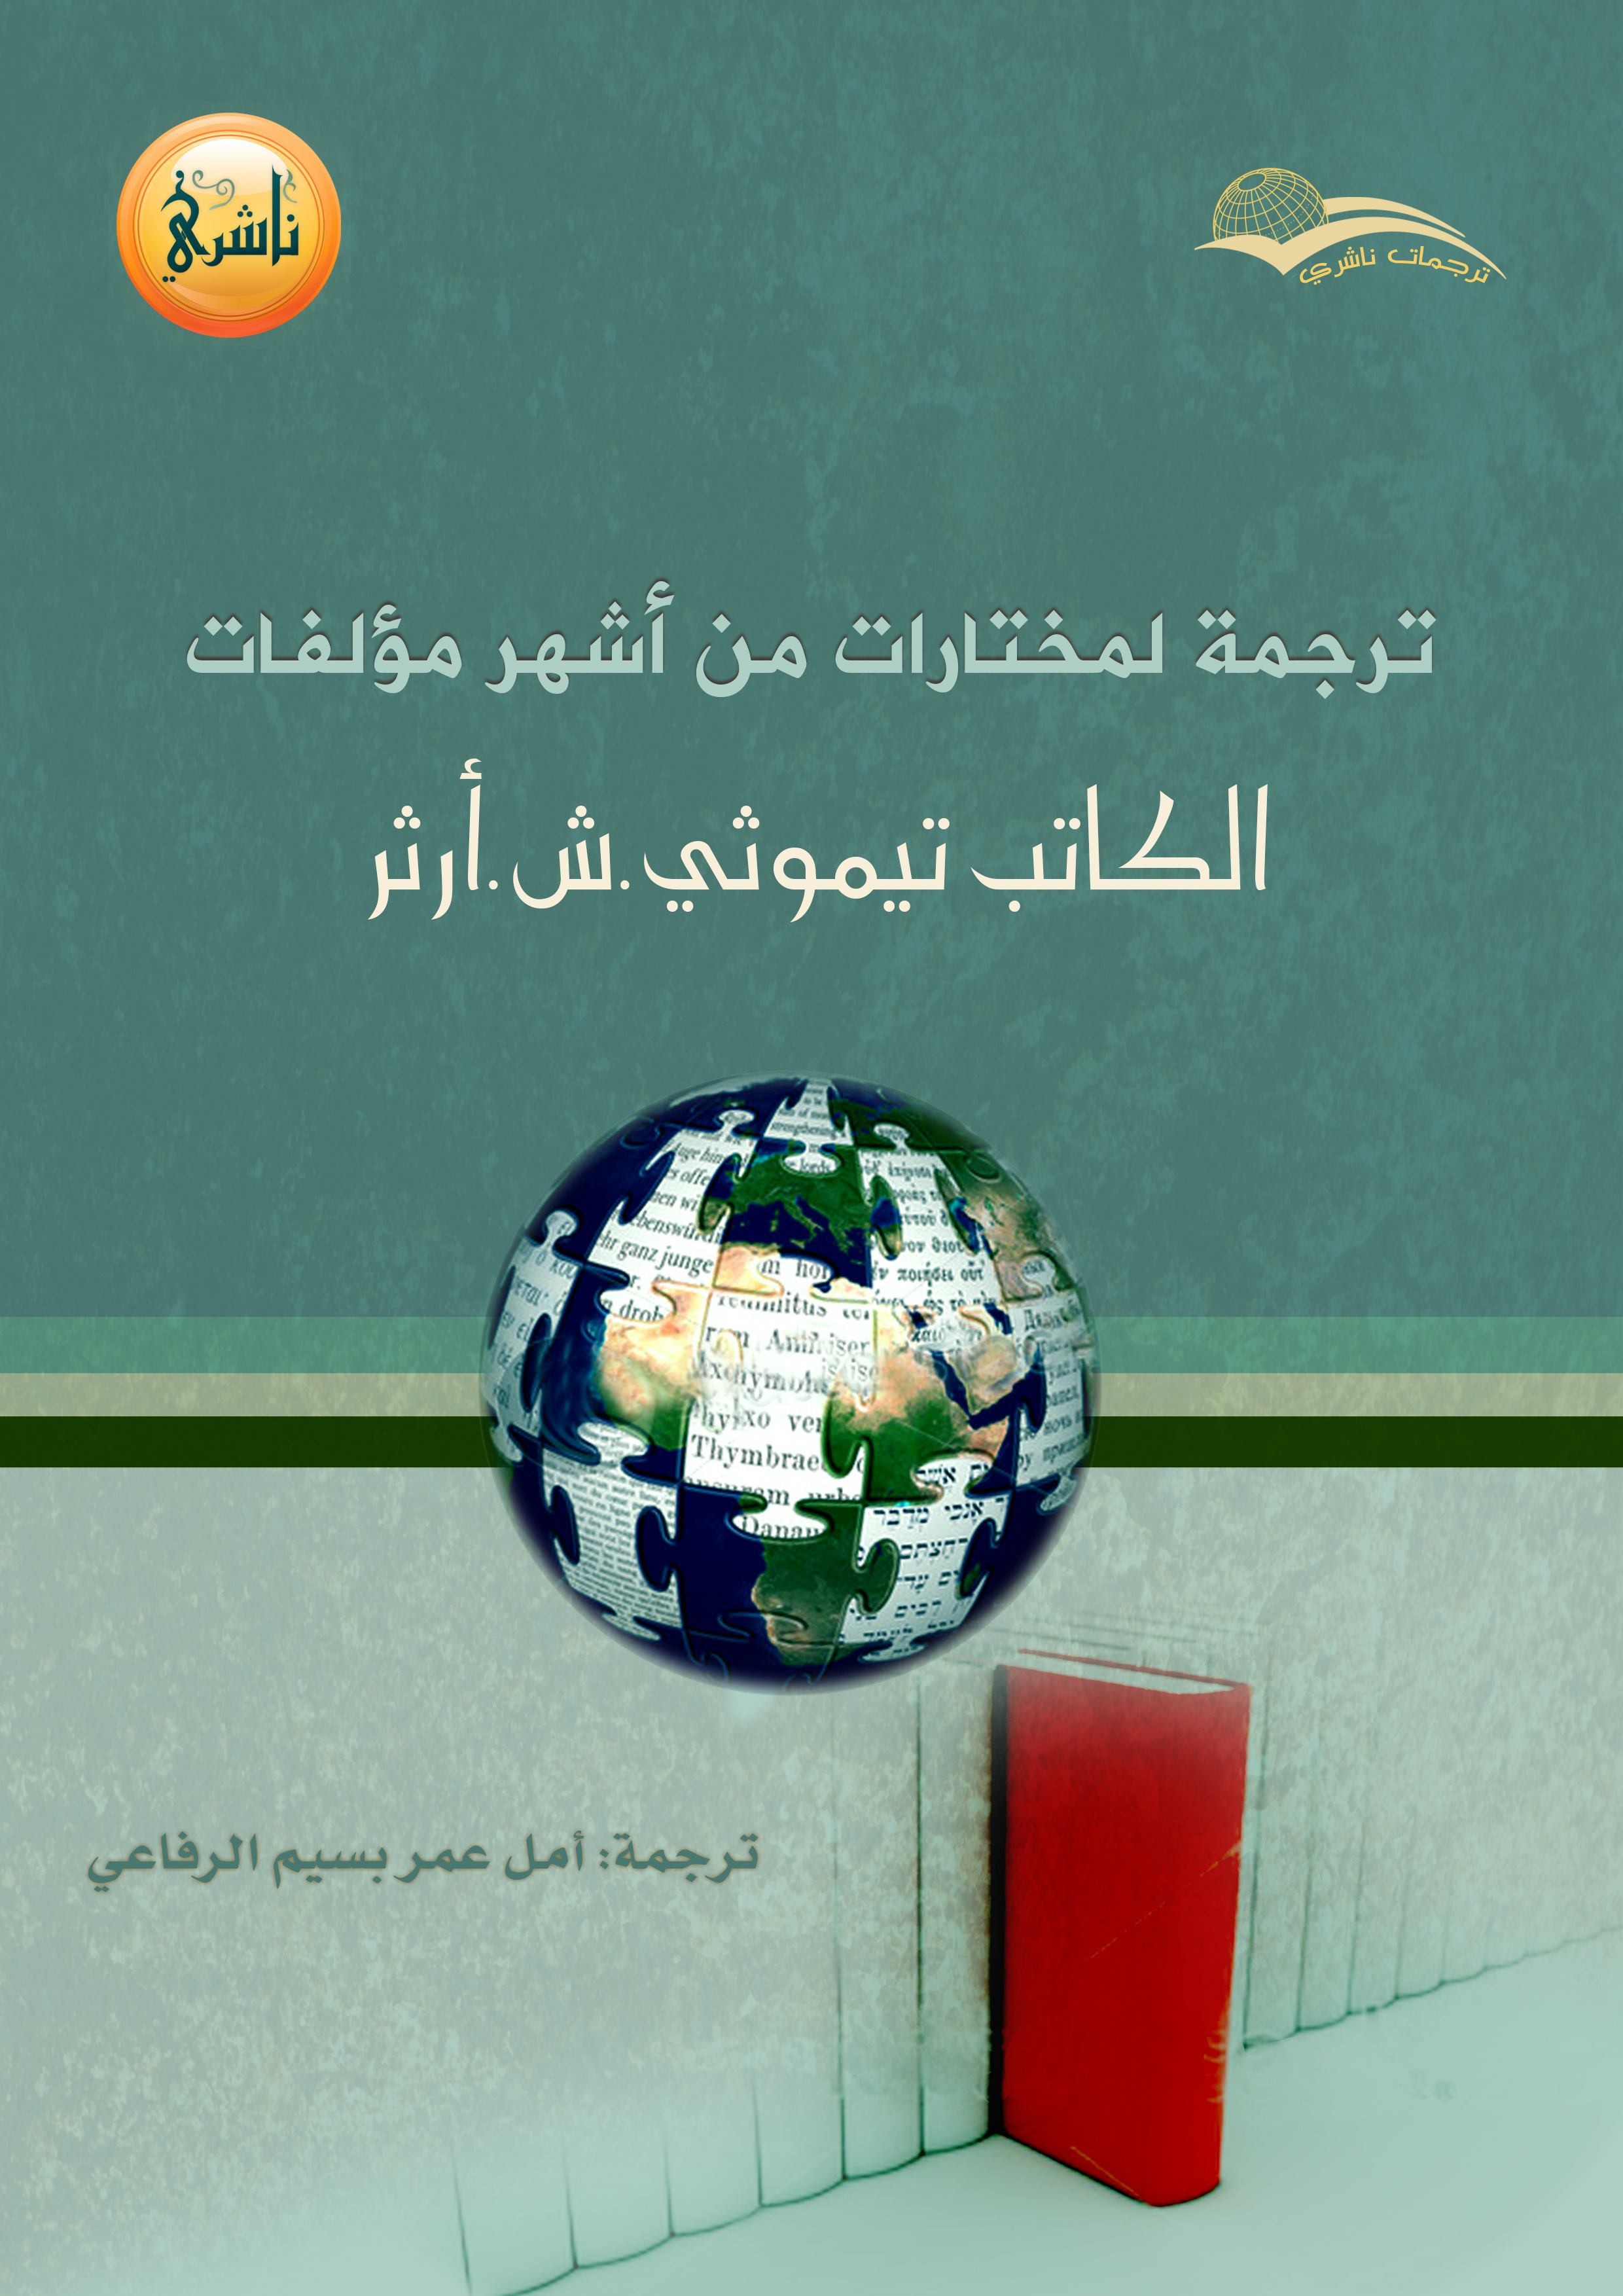 Eketab : كتب عربية الكترونية بصيغة epub